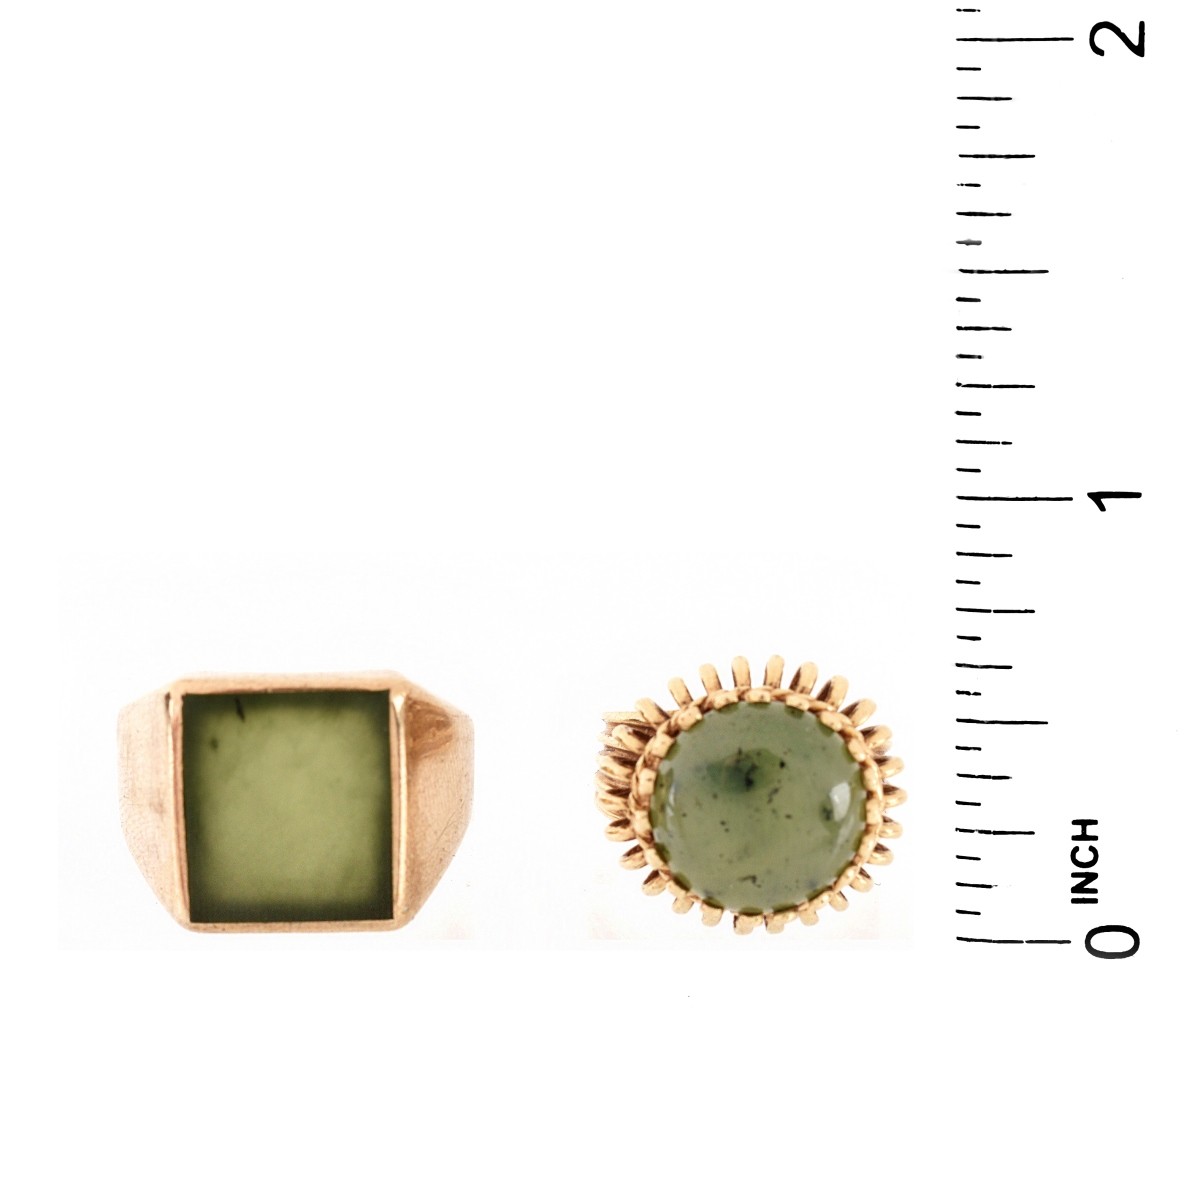 Two Vintage Jade Rings